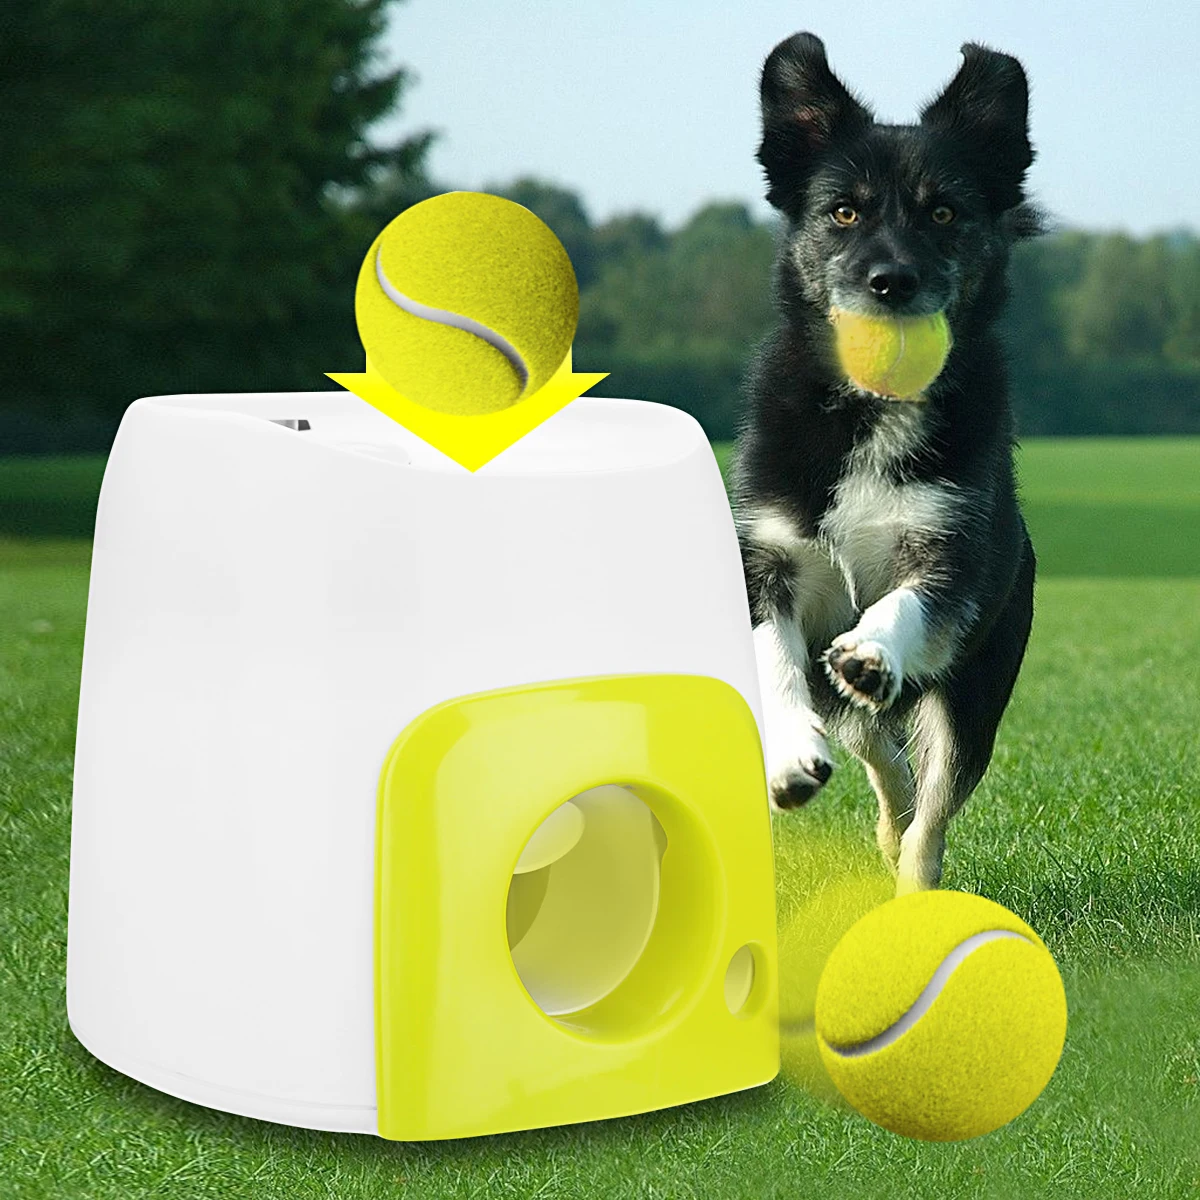 Игрушка для домашних собак, автоматический интерактивный мяч, пусковая установка, теннисный мяч, выкатывается машина, запуск, извлечение мячей, инструмент для тренировки собак